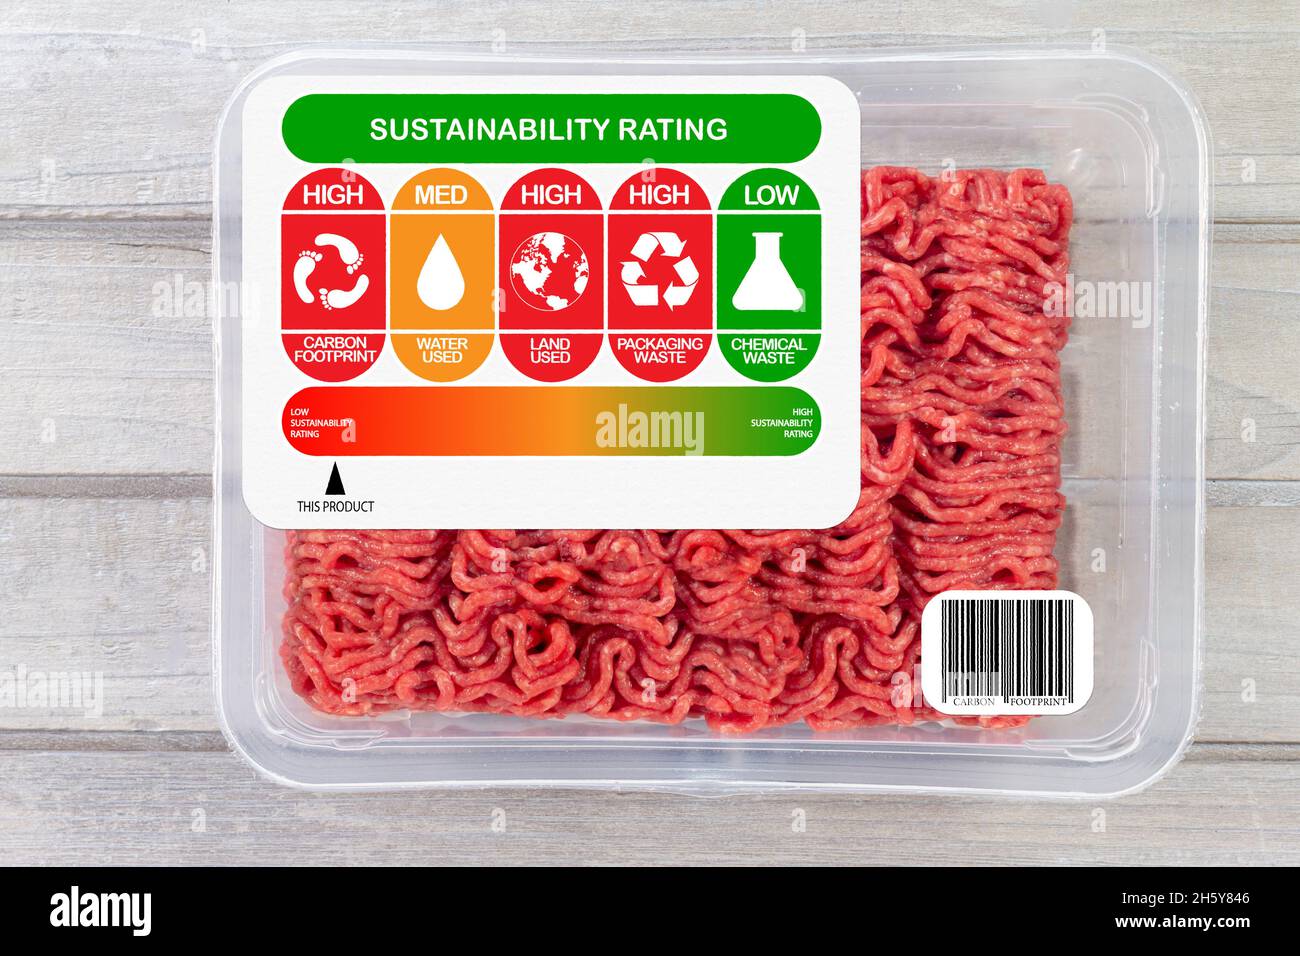 Évaluation de la durabilité de la viande pour l'empreinte carbone, l'utilisation de l'eau, l'utilisation du sol, les déchets d'emballage et l'étiquetage des déchets chimiques.Échelle du produit sur l'indice de notation.Inconvénients Banque D'Images